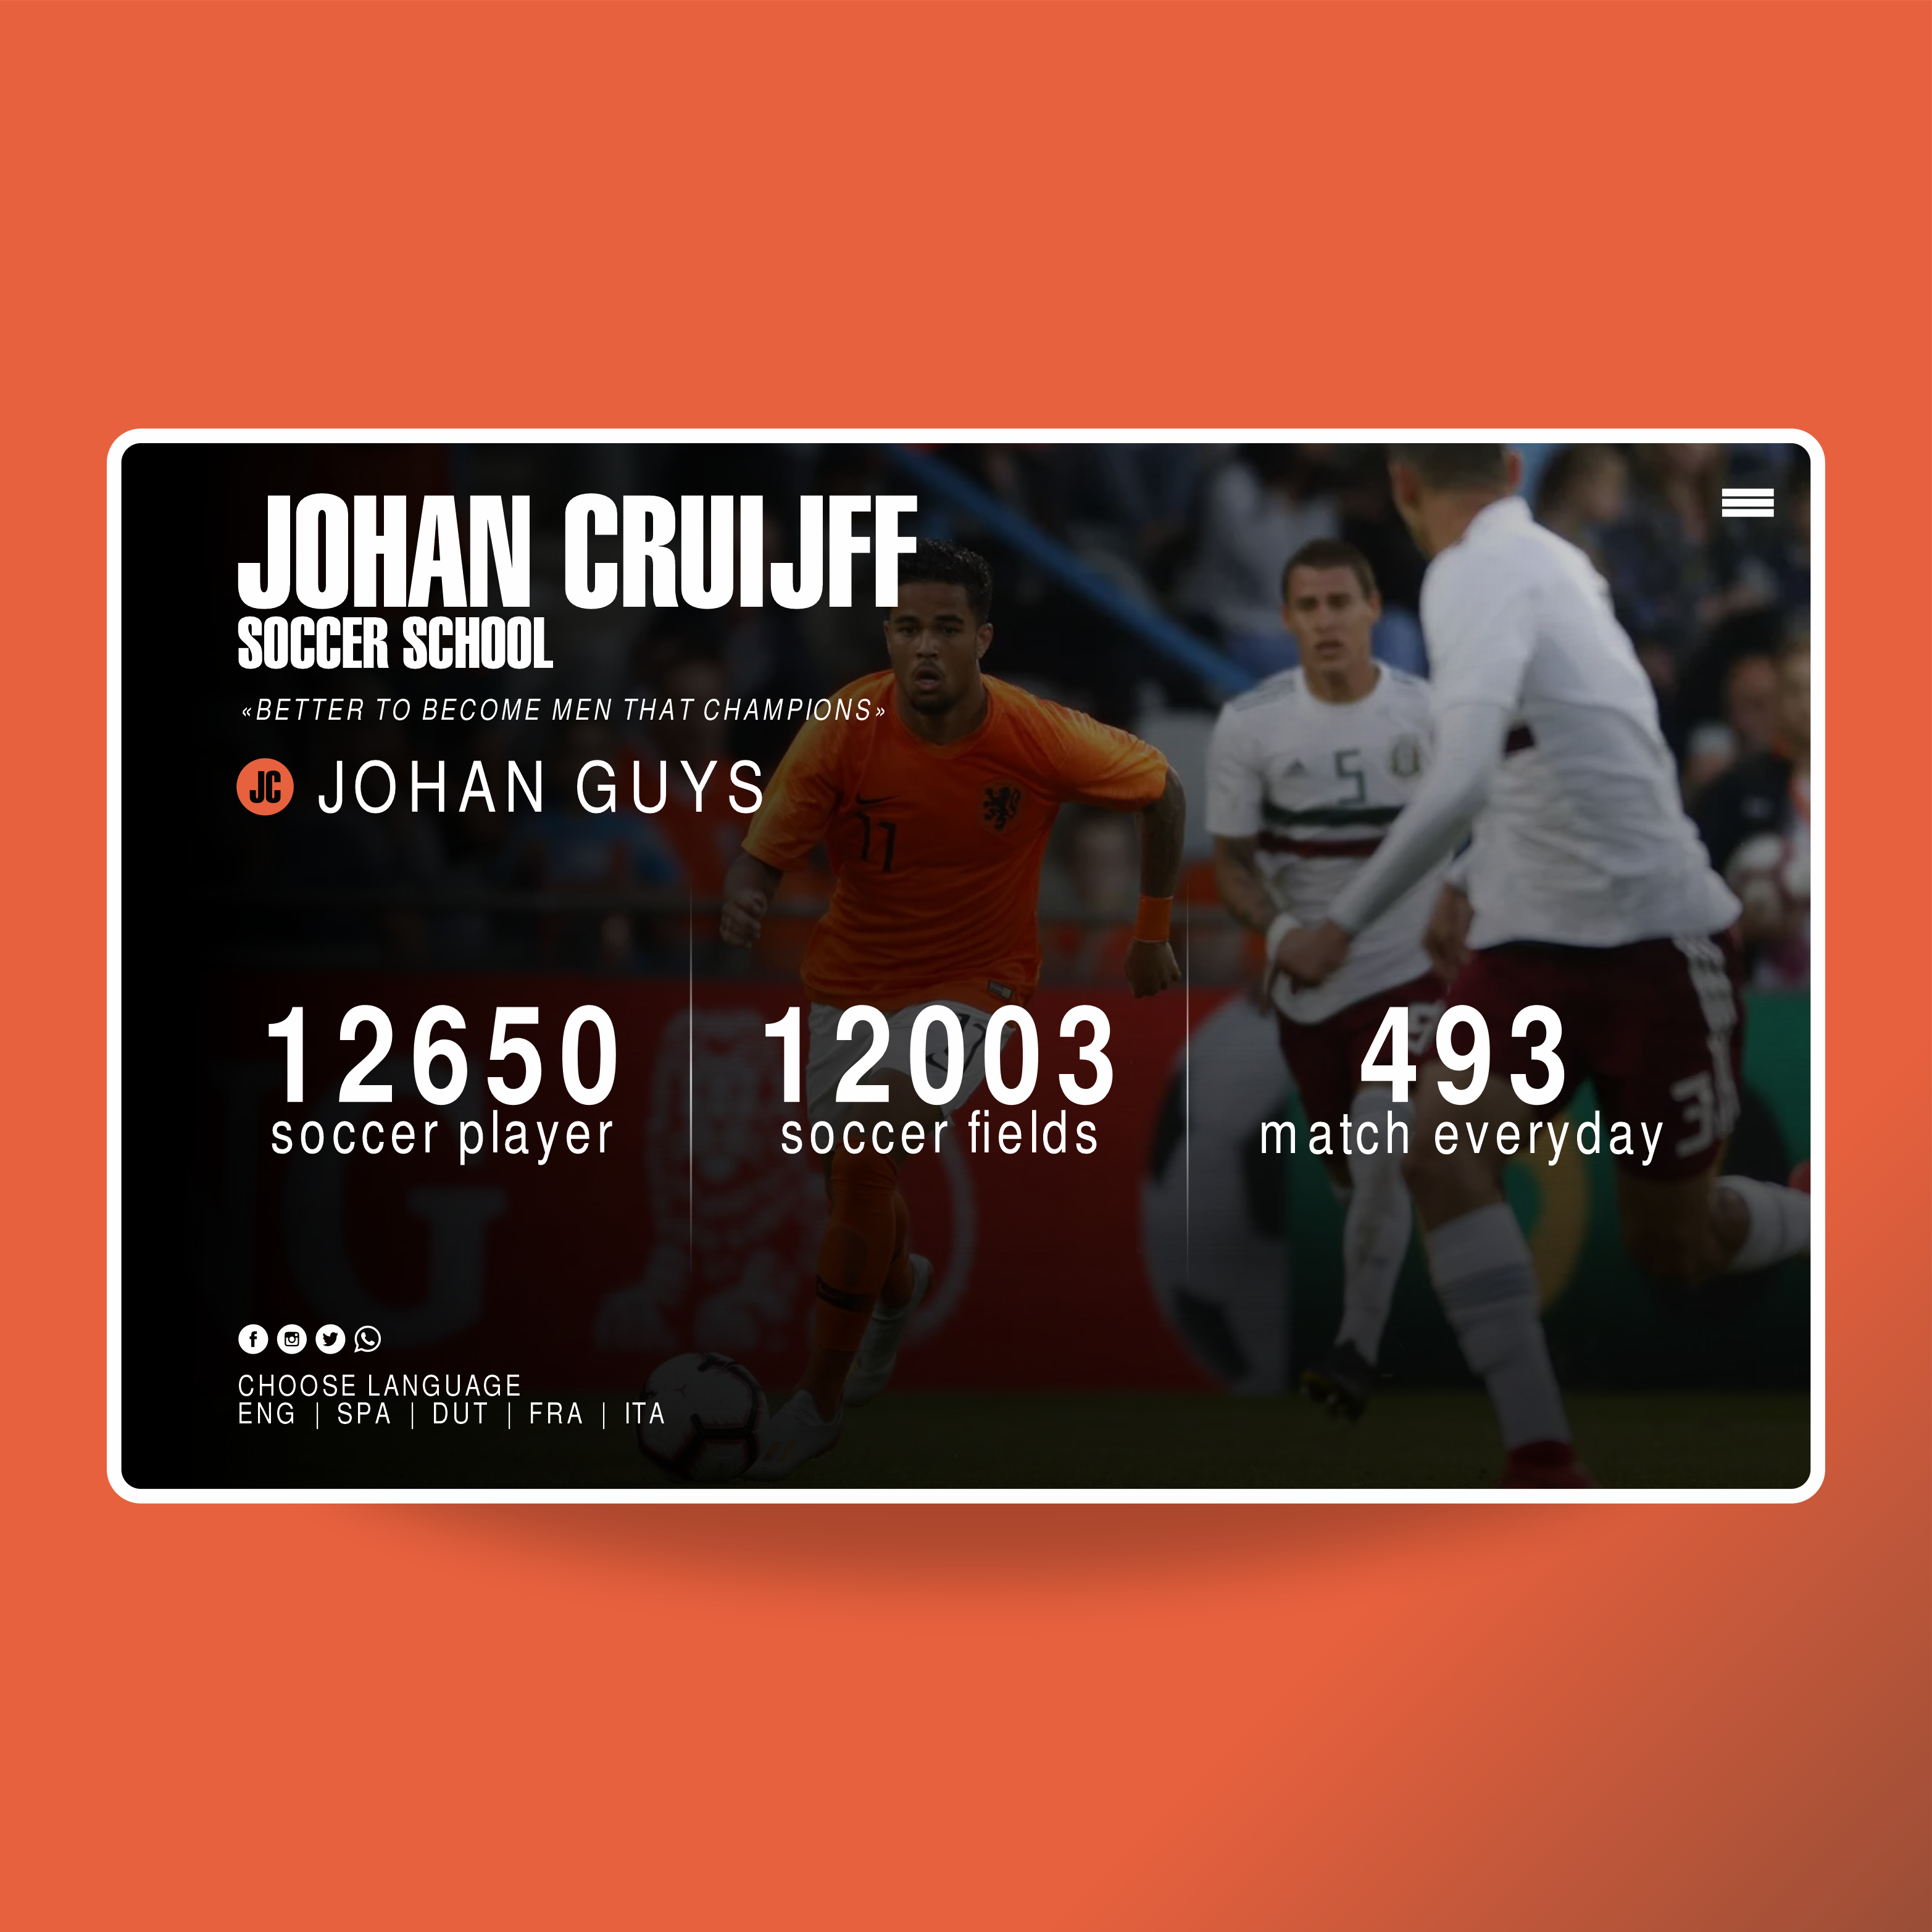 Johan Cruijff Soccer School | MASTROiNCHIOSTRO web site - brand logo